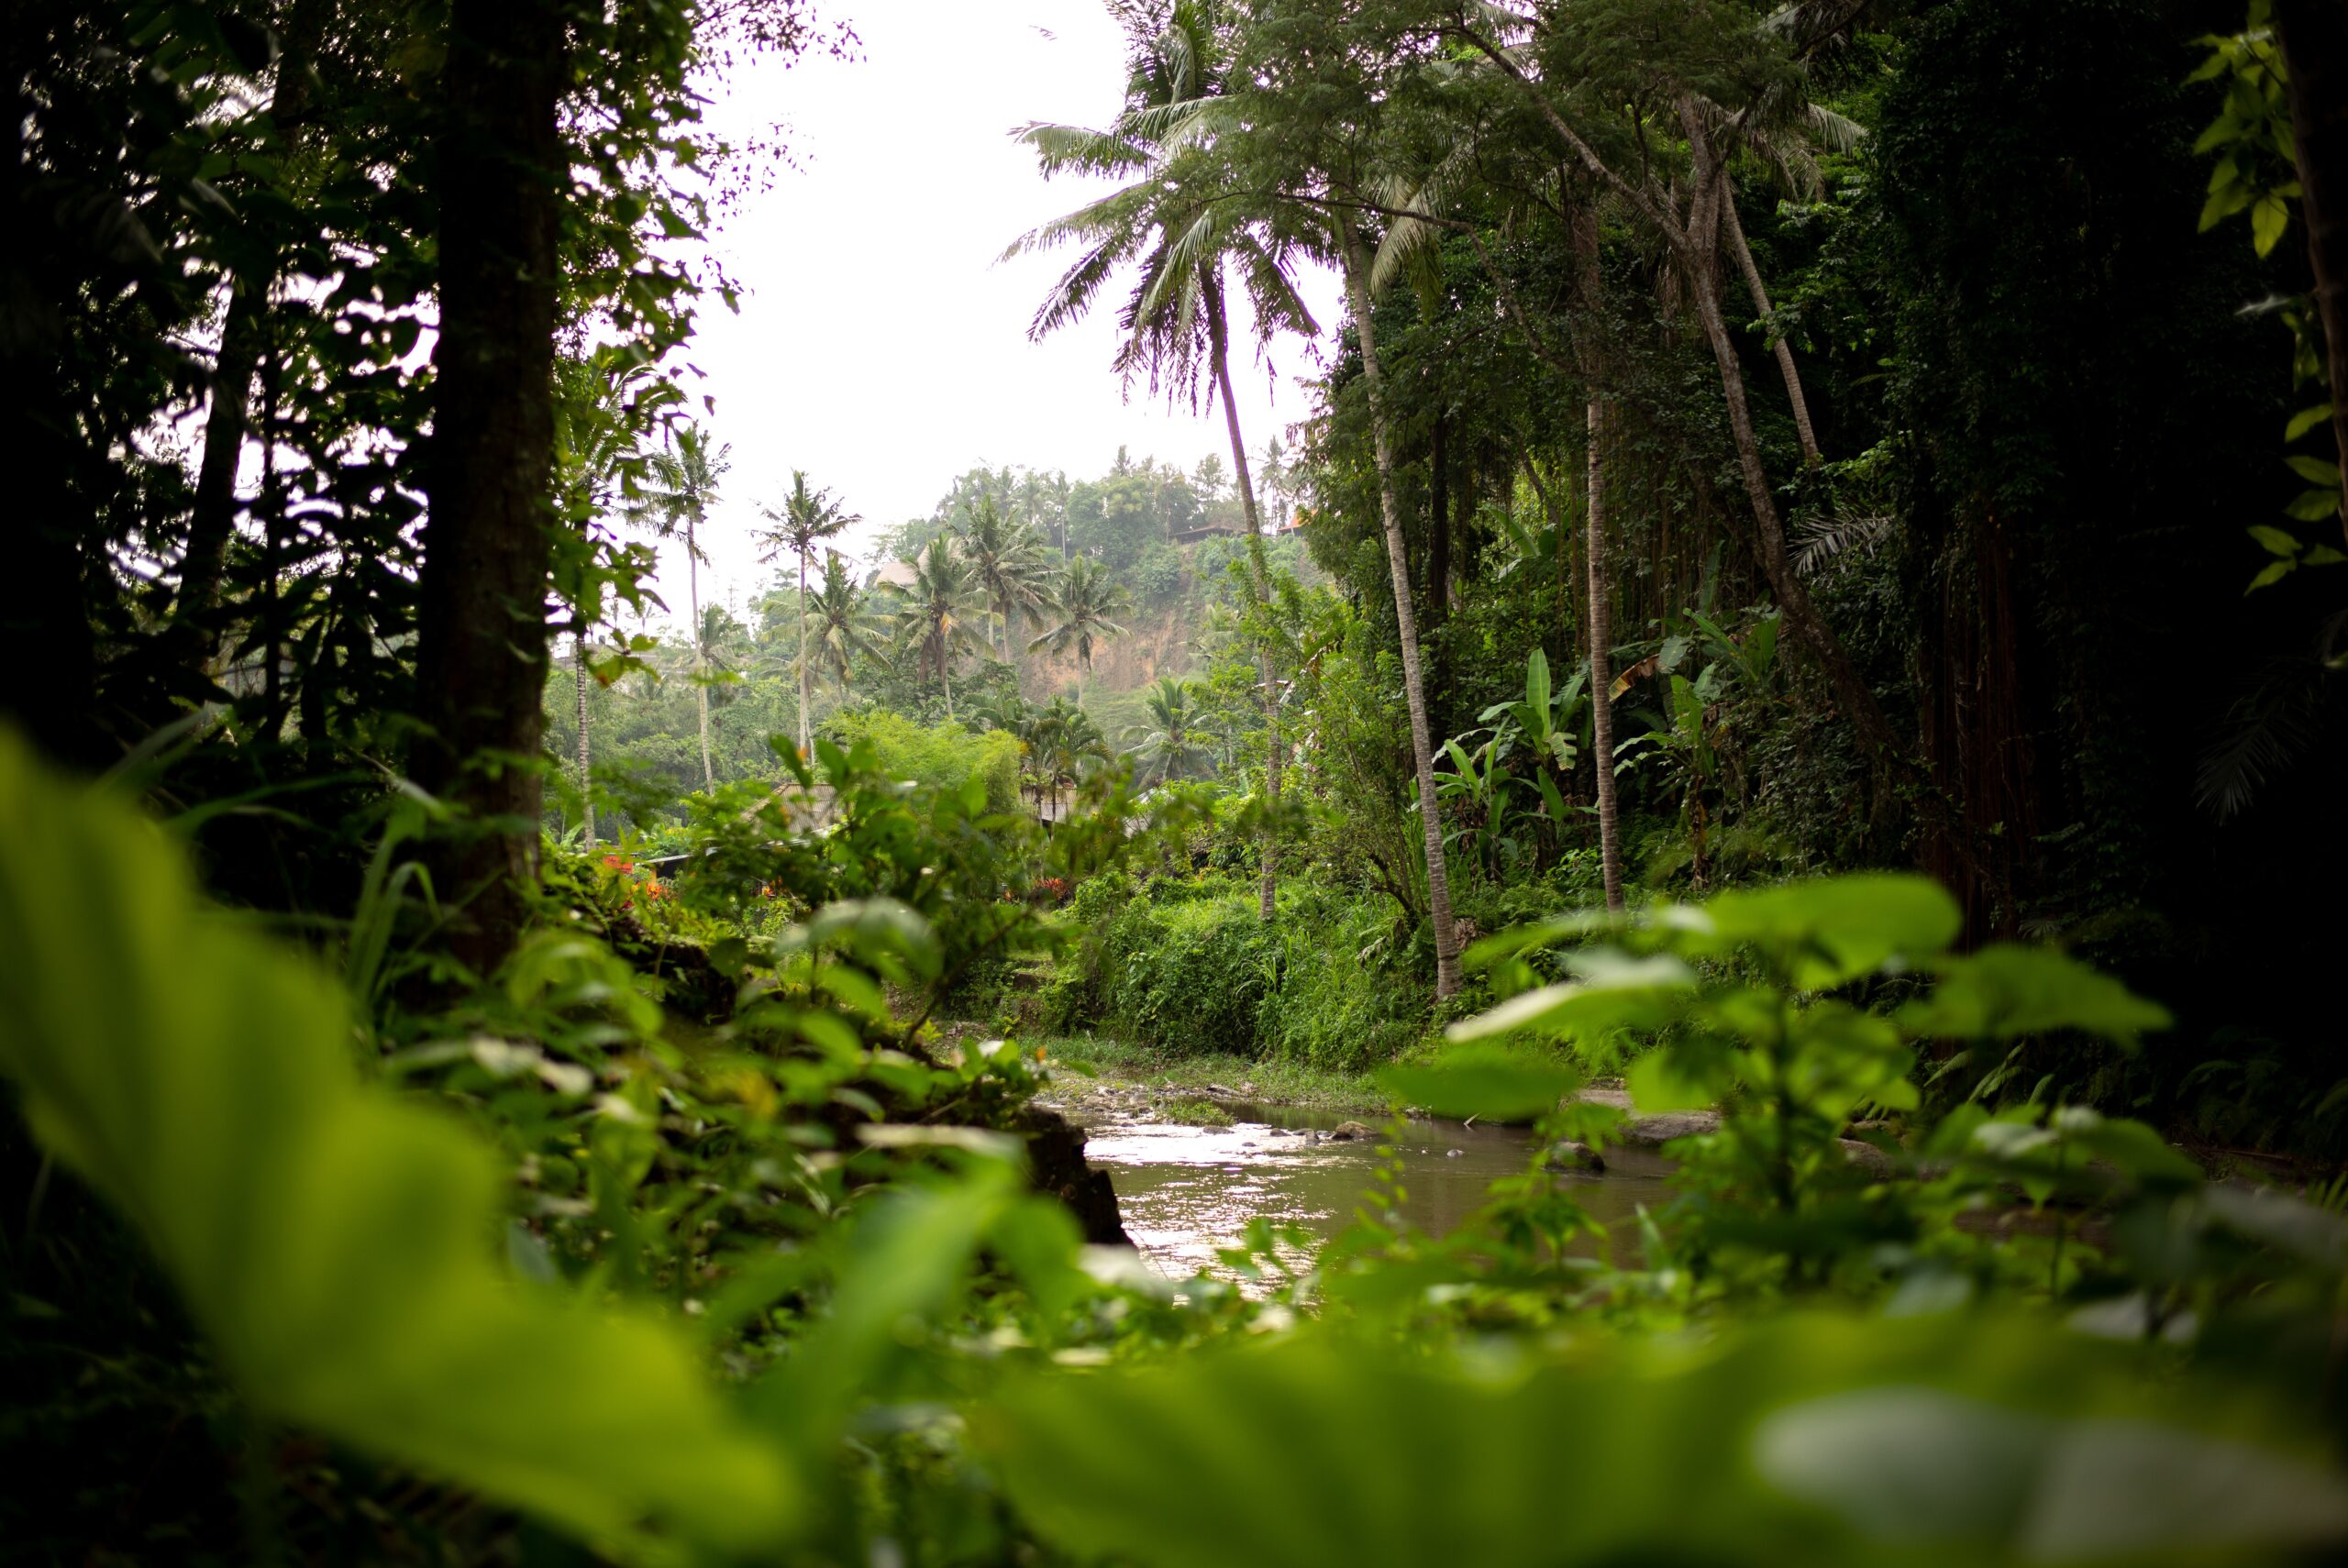 아마존 열대우림 산림 환경